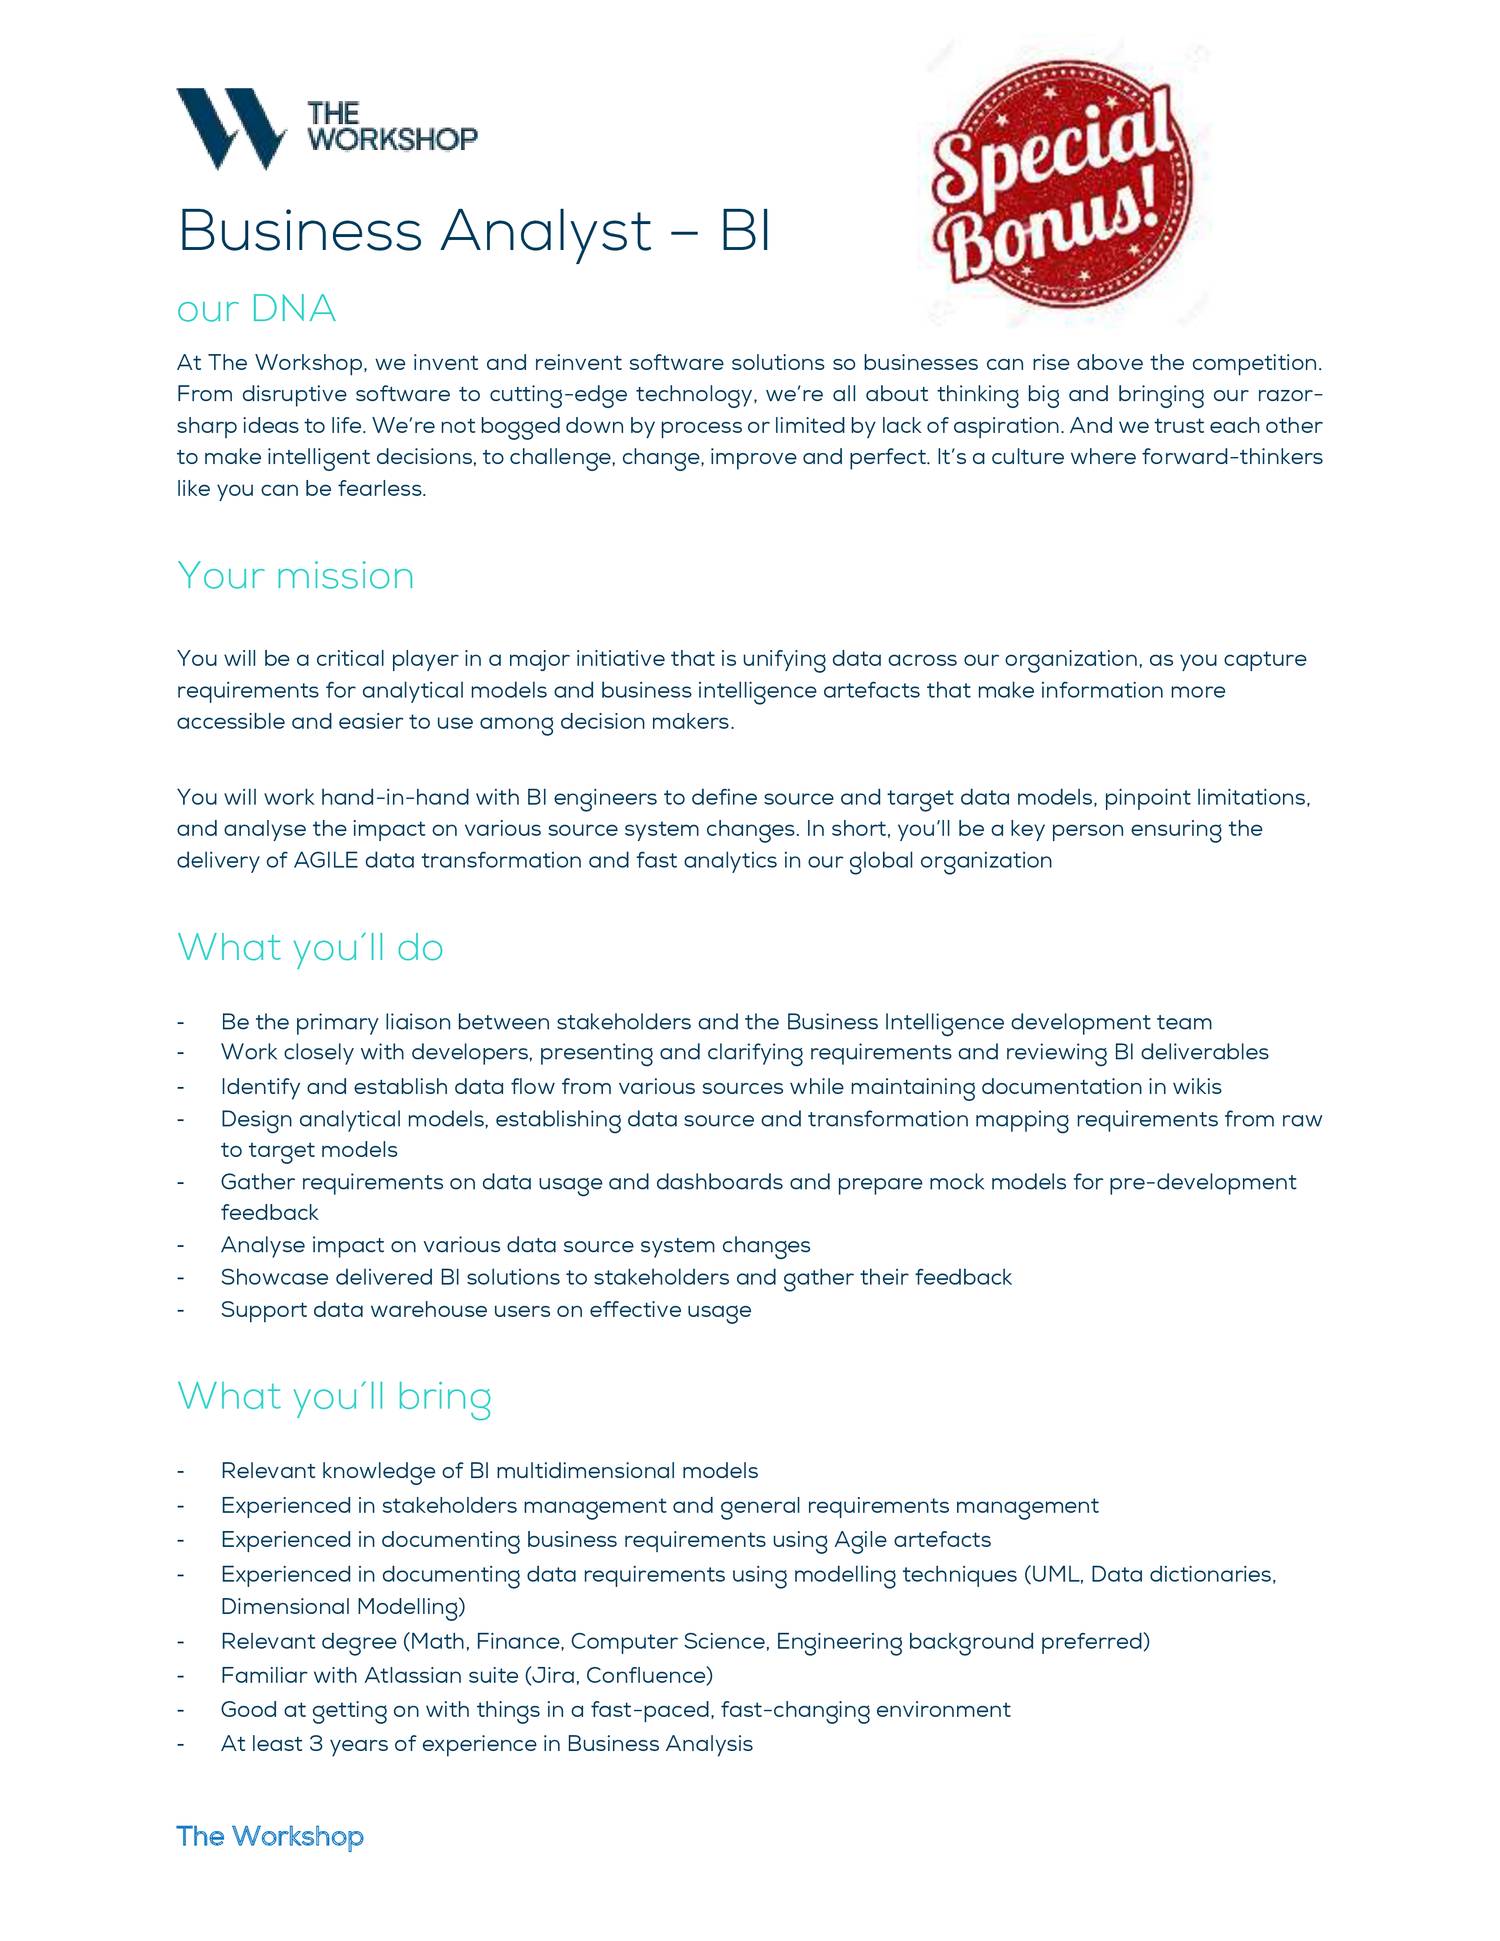 Certified-Business-Analyst Testengine